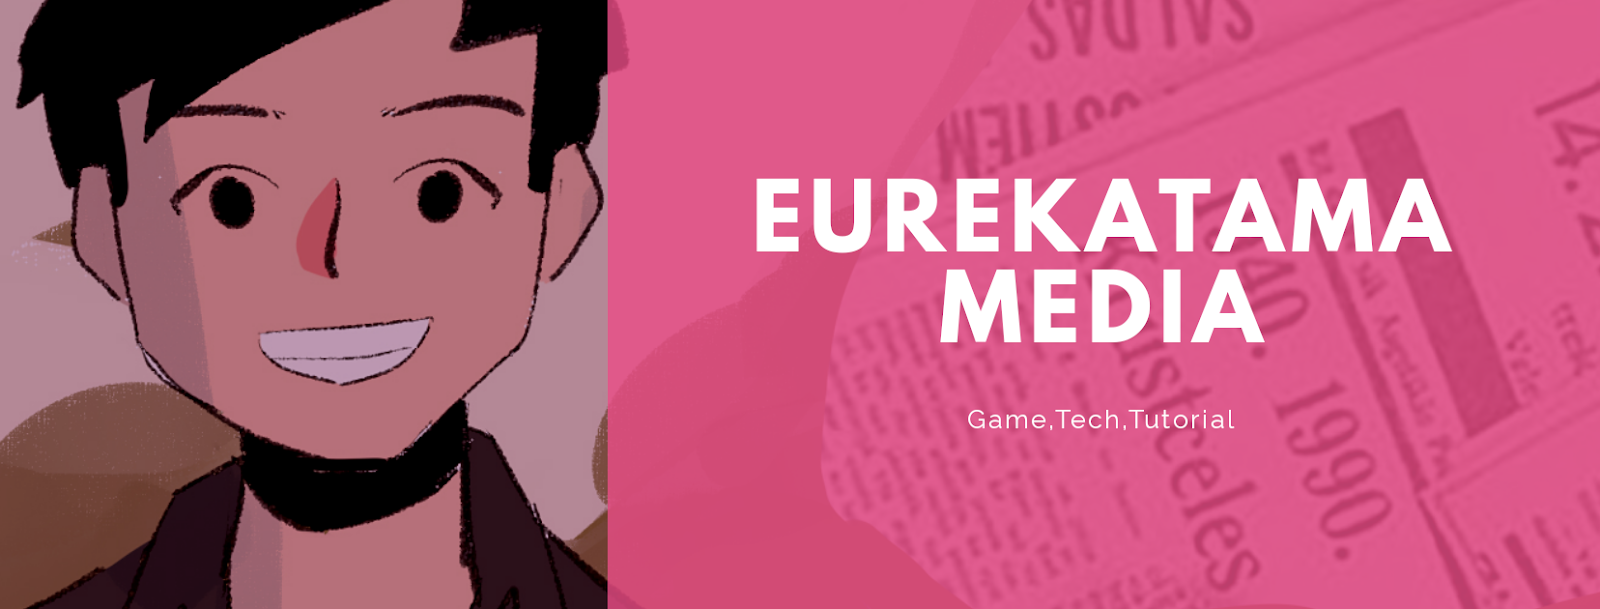 Eurekatama Media